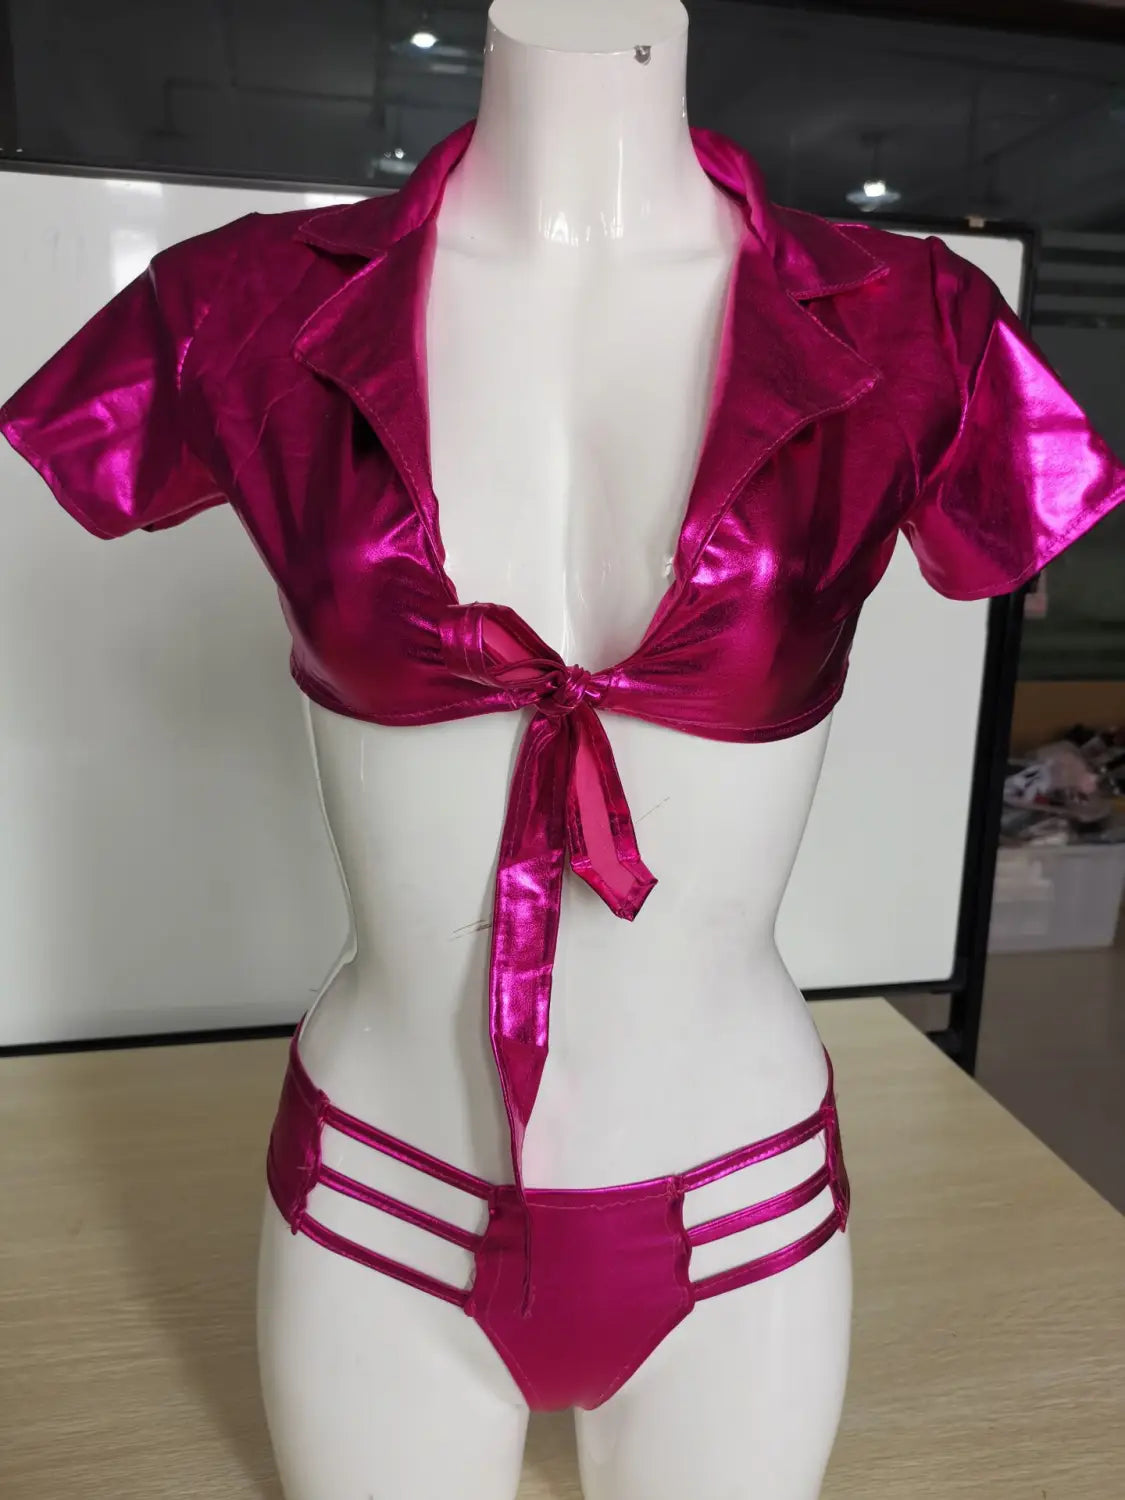 Pink Patent Push-up Bikini - Shine Bright Anytime